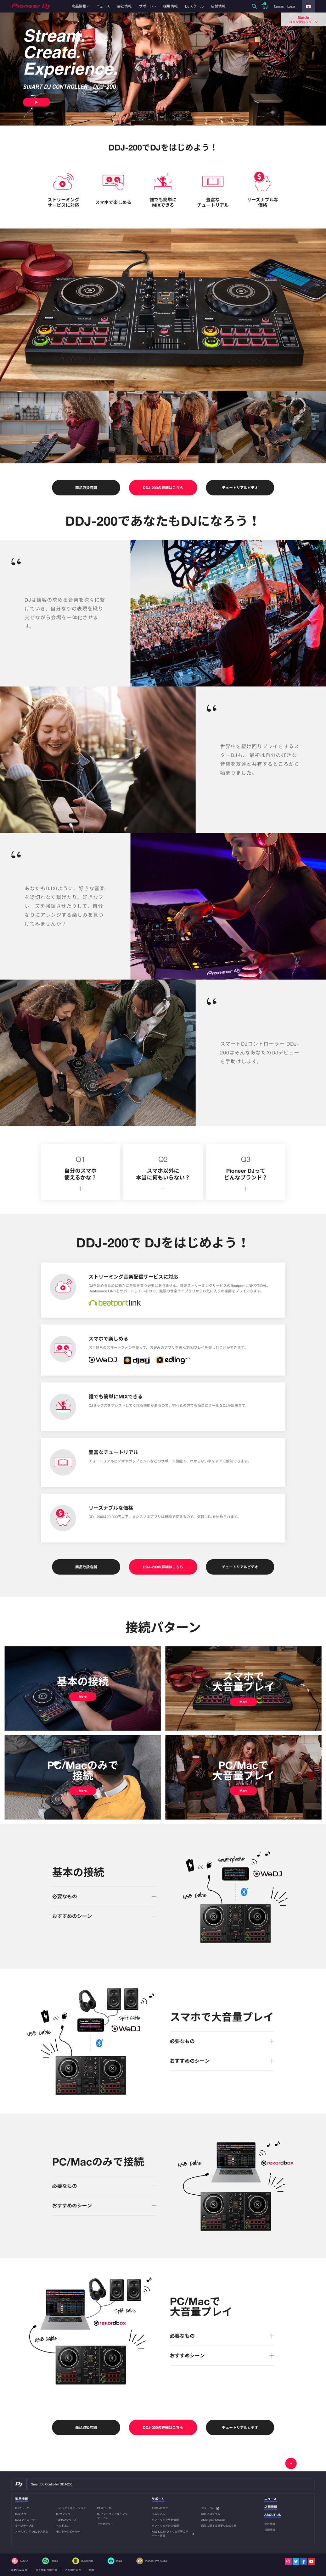 Pioneer DJ株式会社『DDJ-200』Brand Site